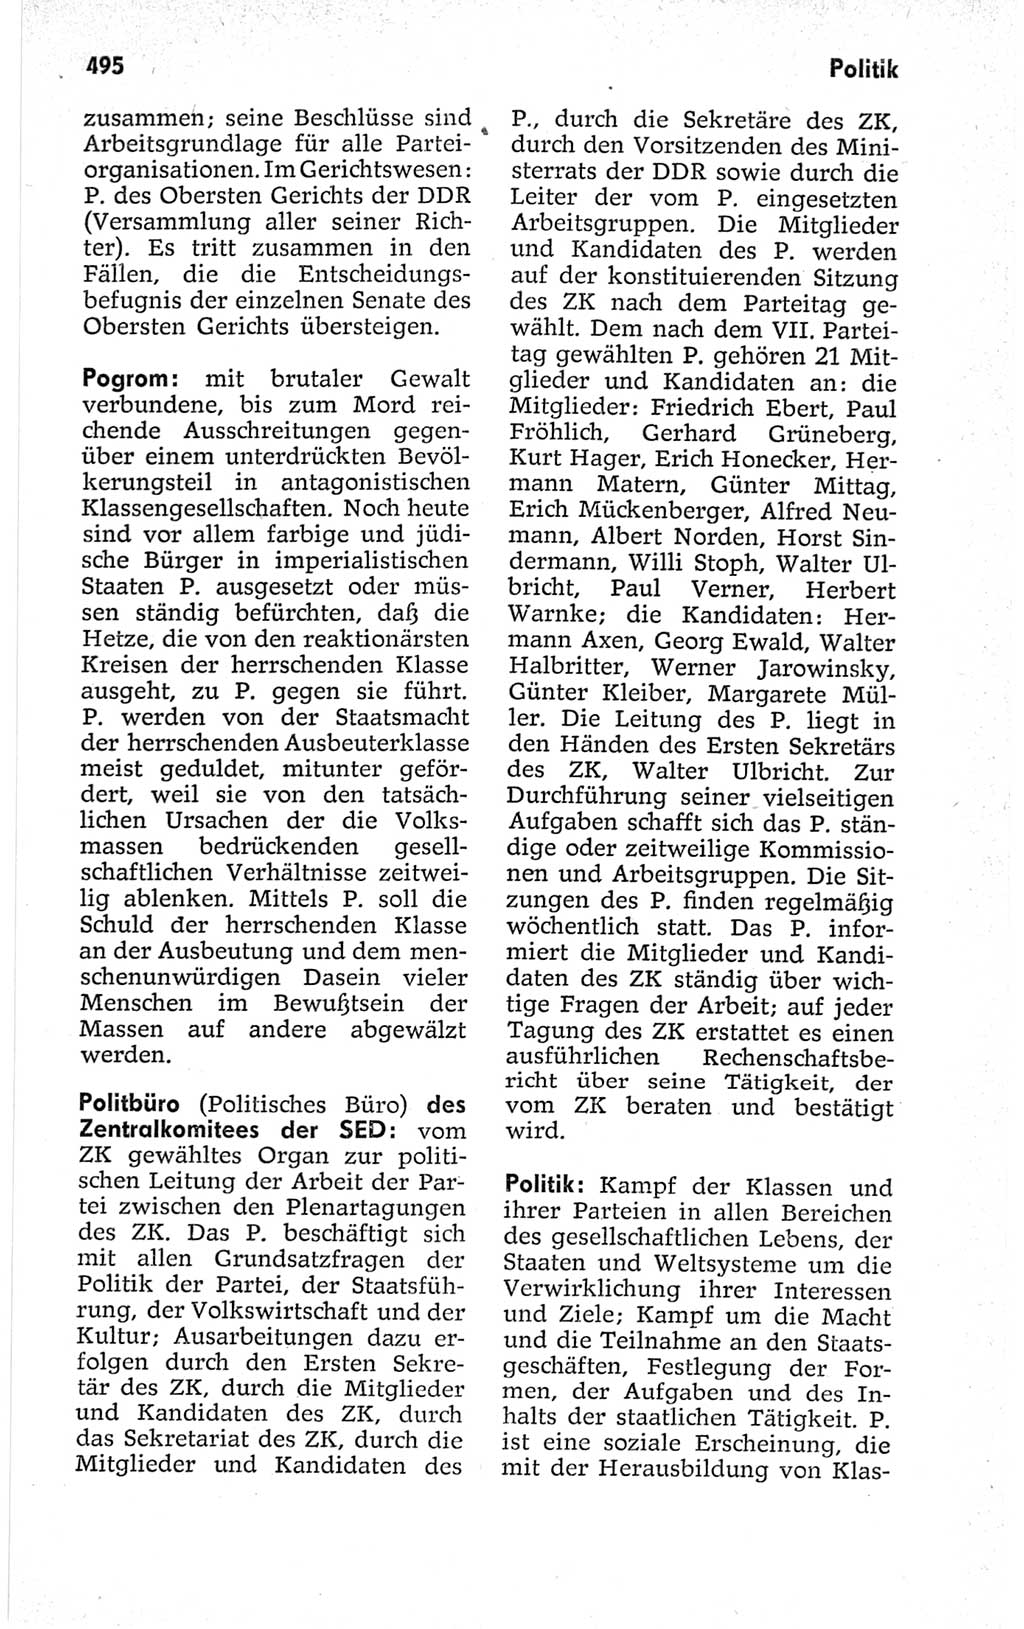 Kleines politisches Wörterbuch [Deutsche Demokratische Republik (DDR)] 1967, Seite 495 (Kl. pol. Wb. DDR 1967, S. 495)